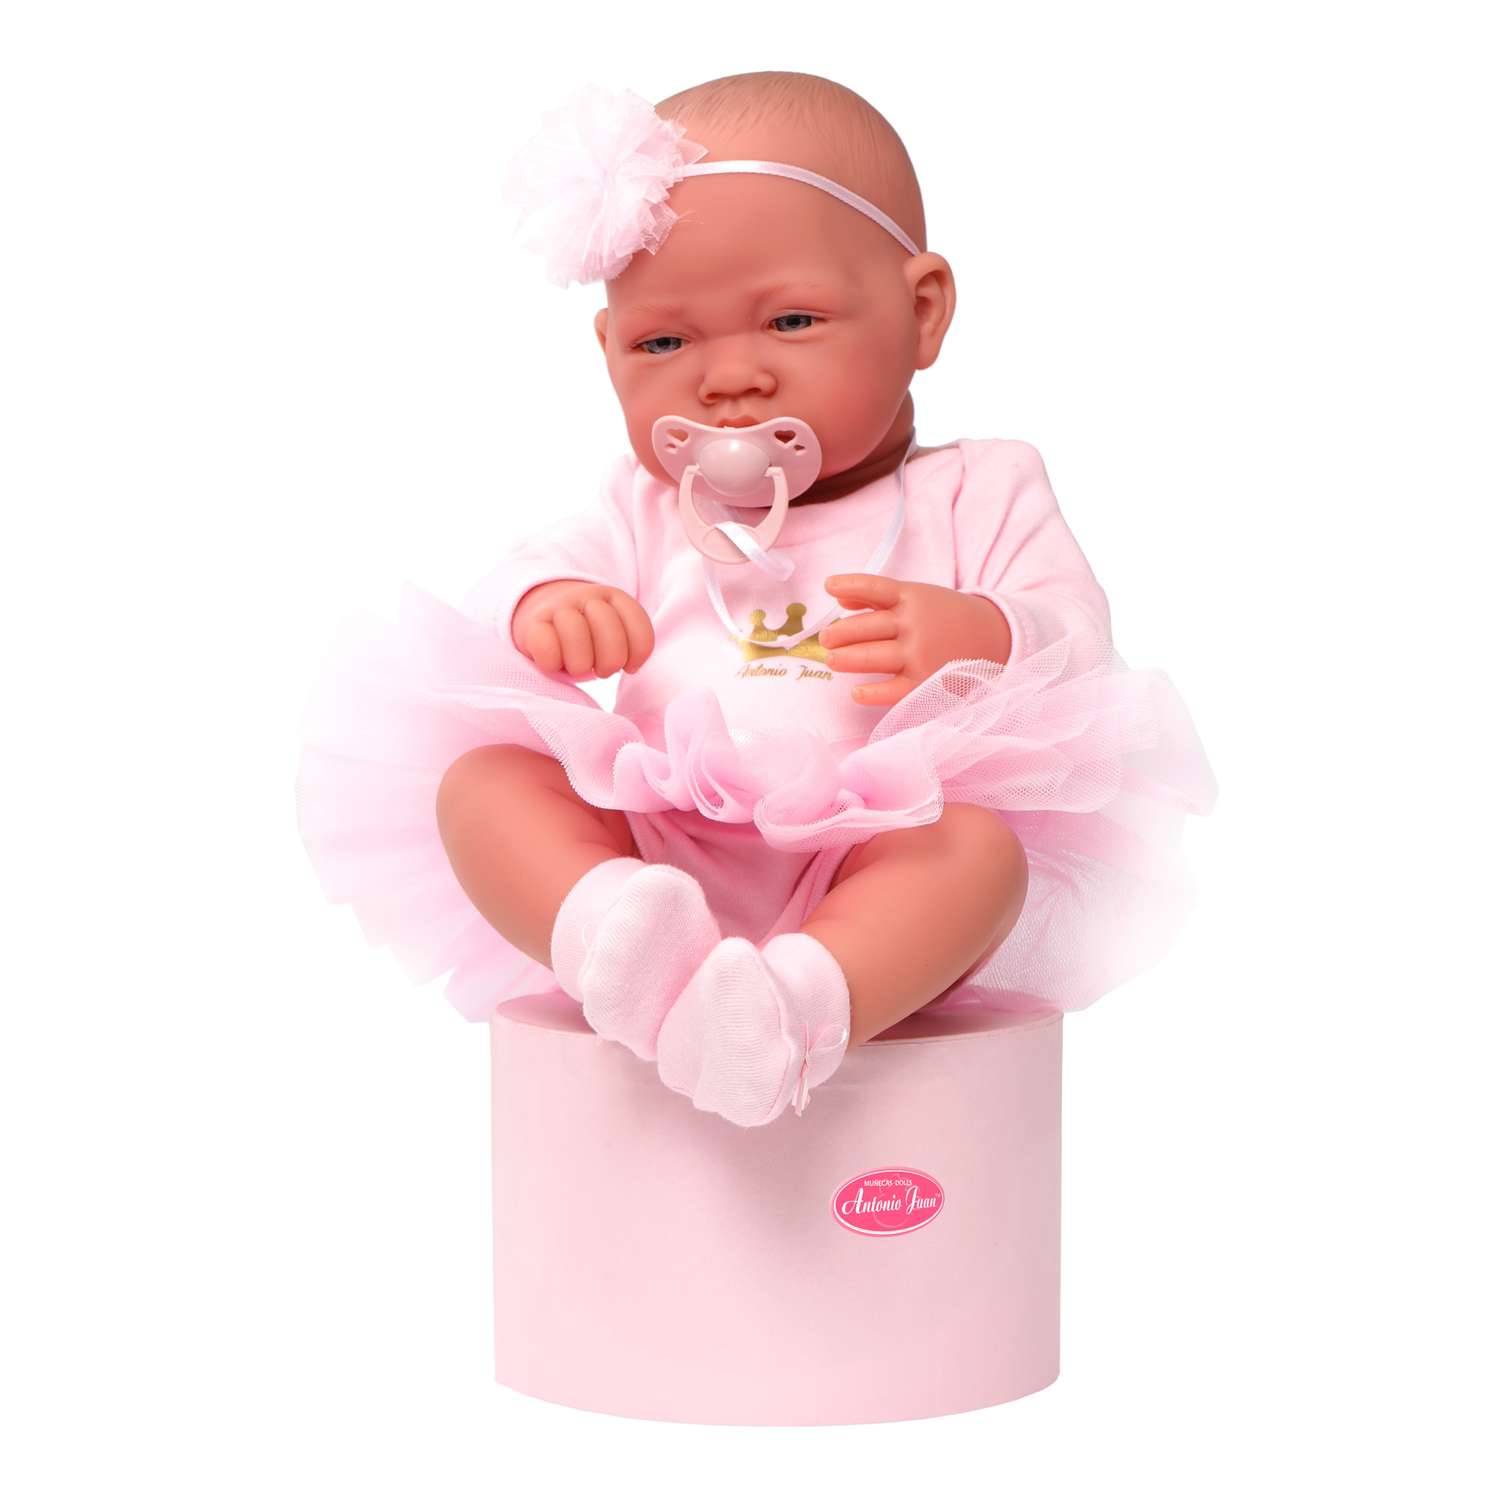 Кукла пупс Antonio Juan Эми в розовом 42 см виниловая 50085 - фото 2